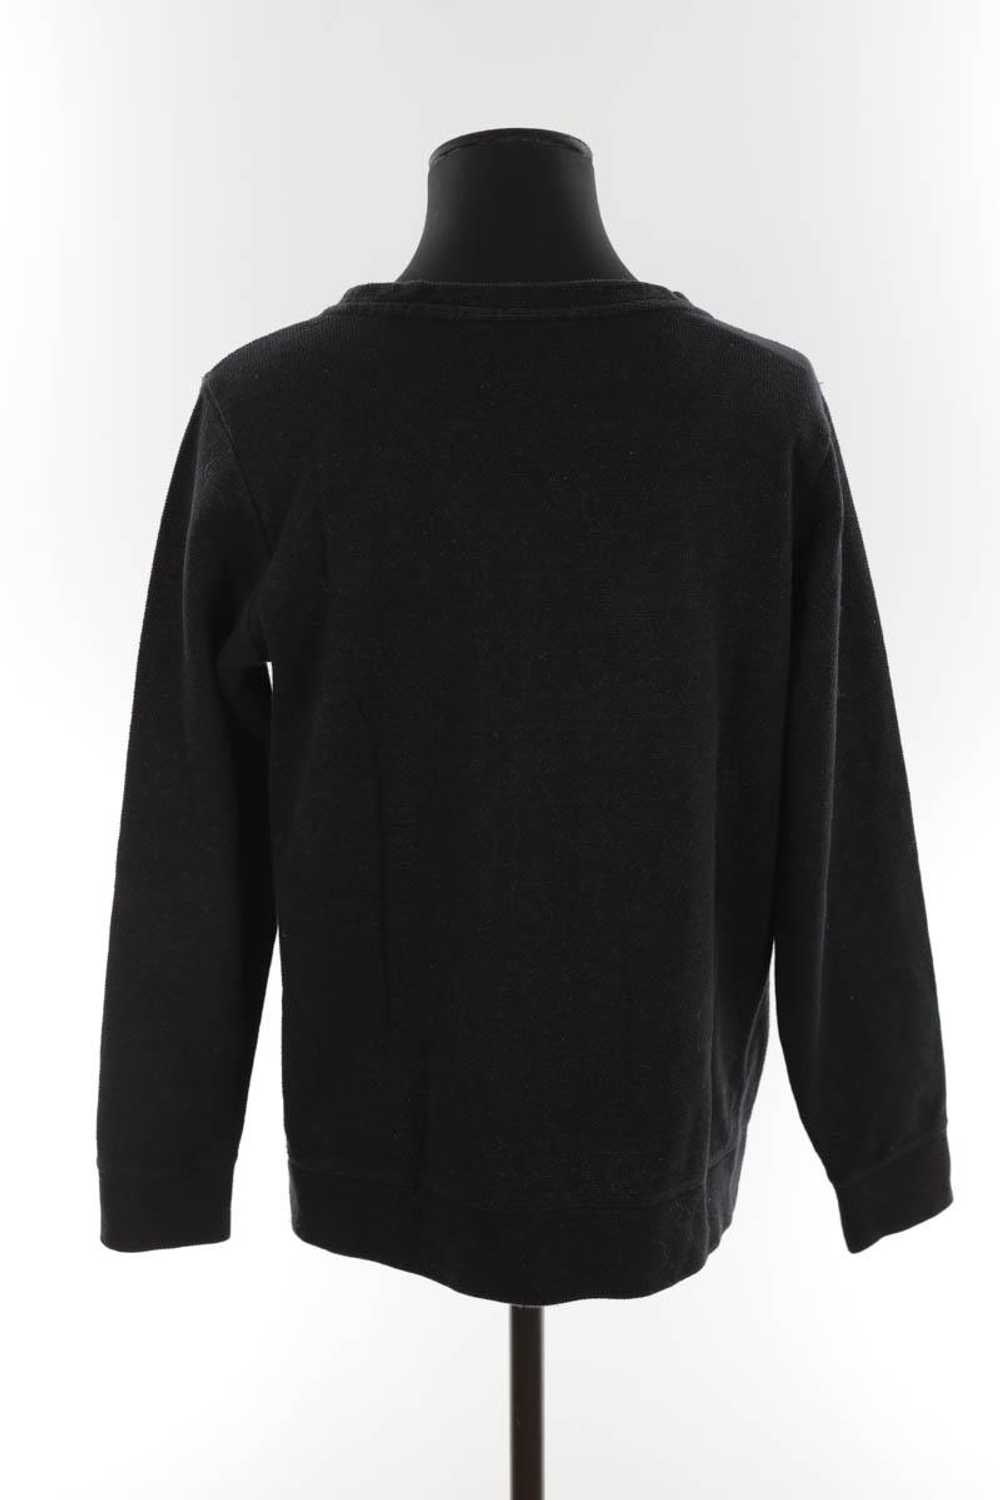 Circular Clothing Pull-over en coton APC noir. Ma… - image 4